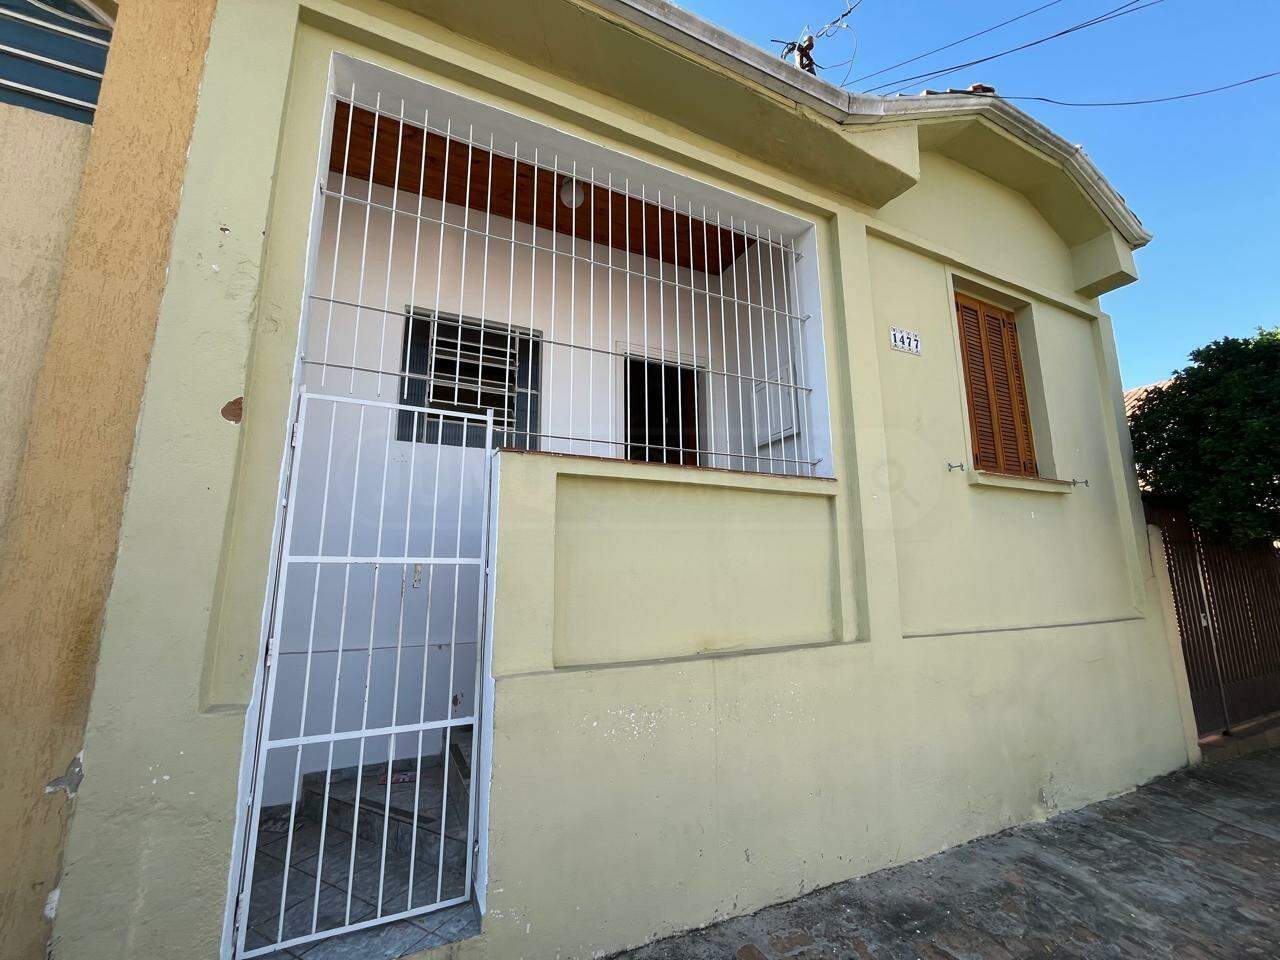 Casa para alugar, 2 quartos, no bairro Jardim Europa em Piracicaba - SP